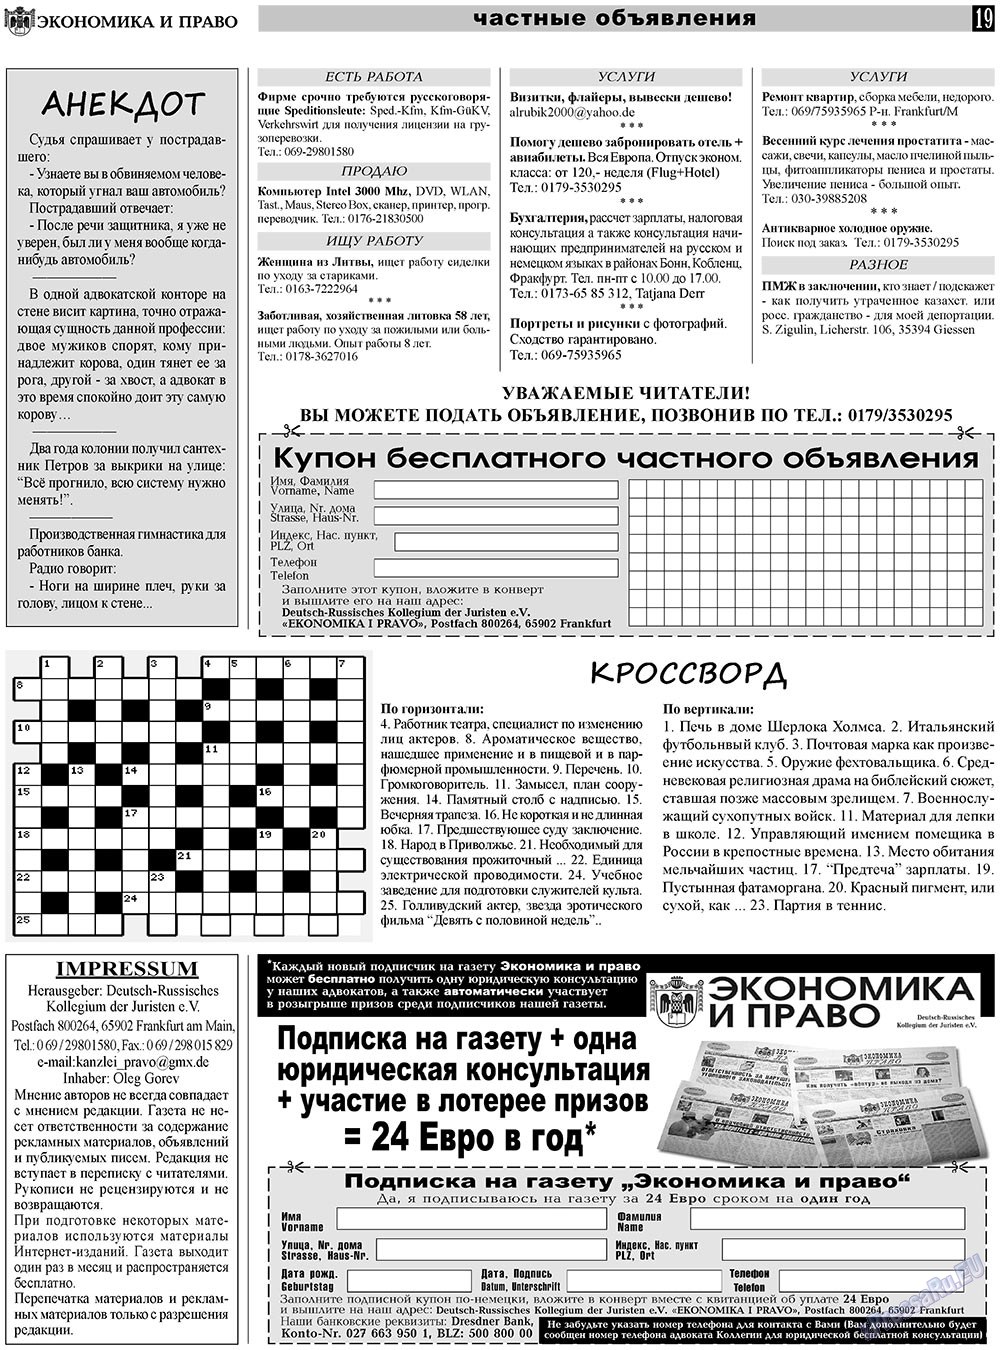 Экономика и право, газета. 2011 №1 стр.19